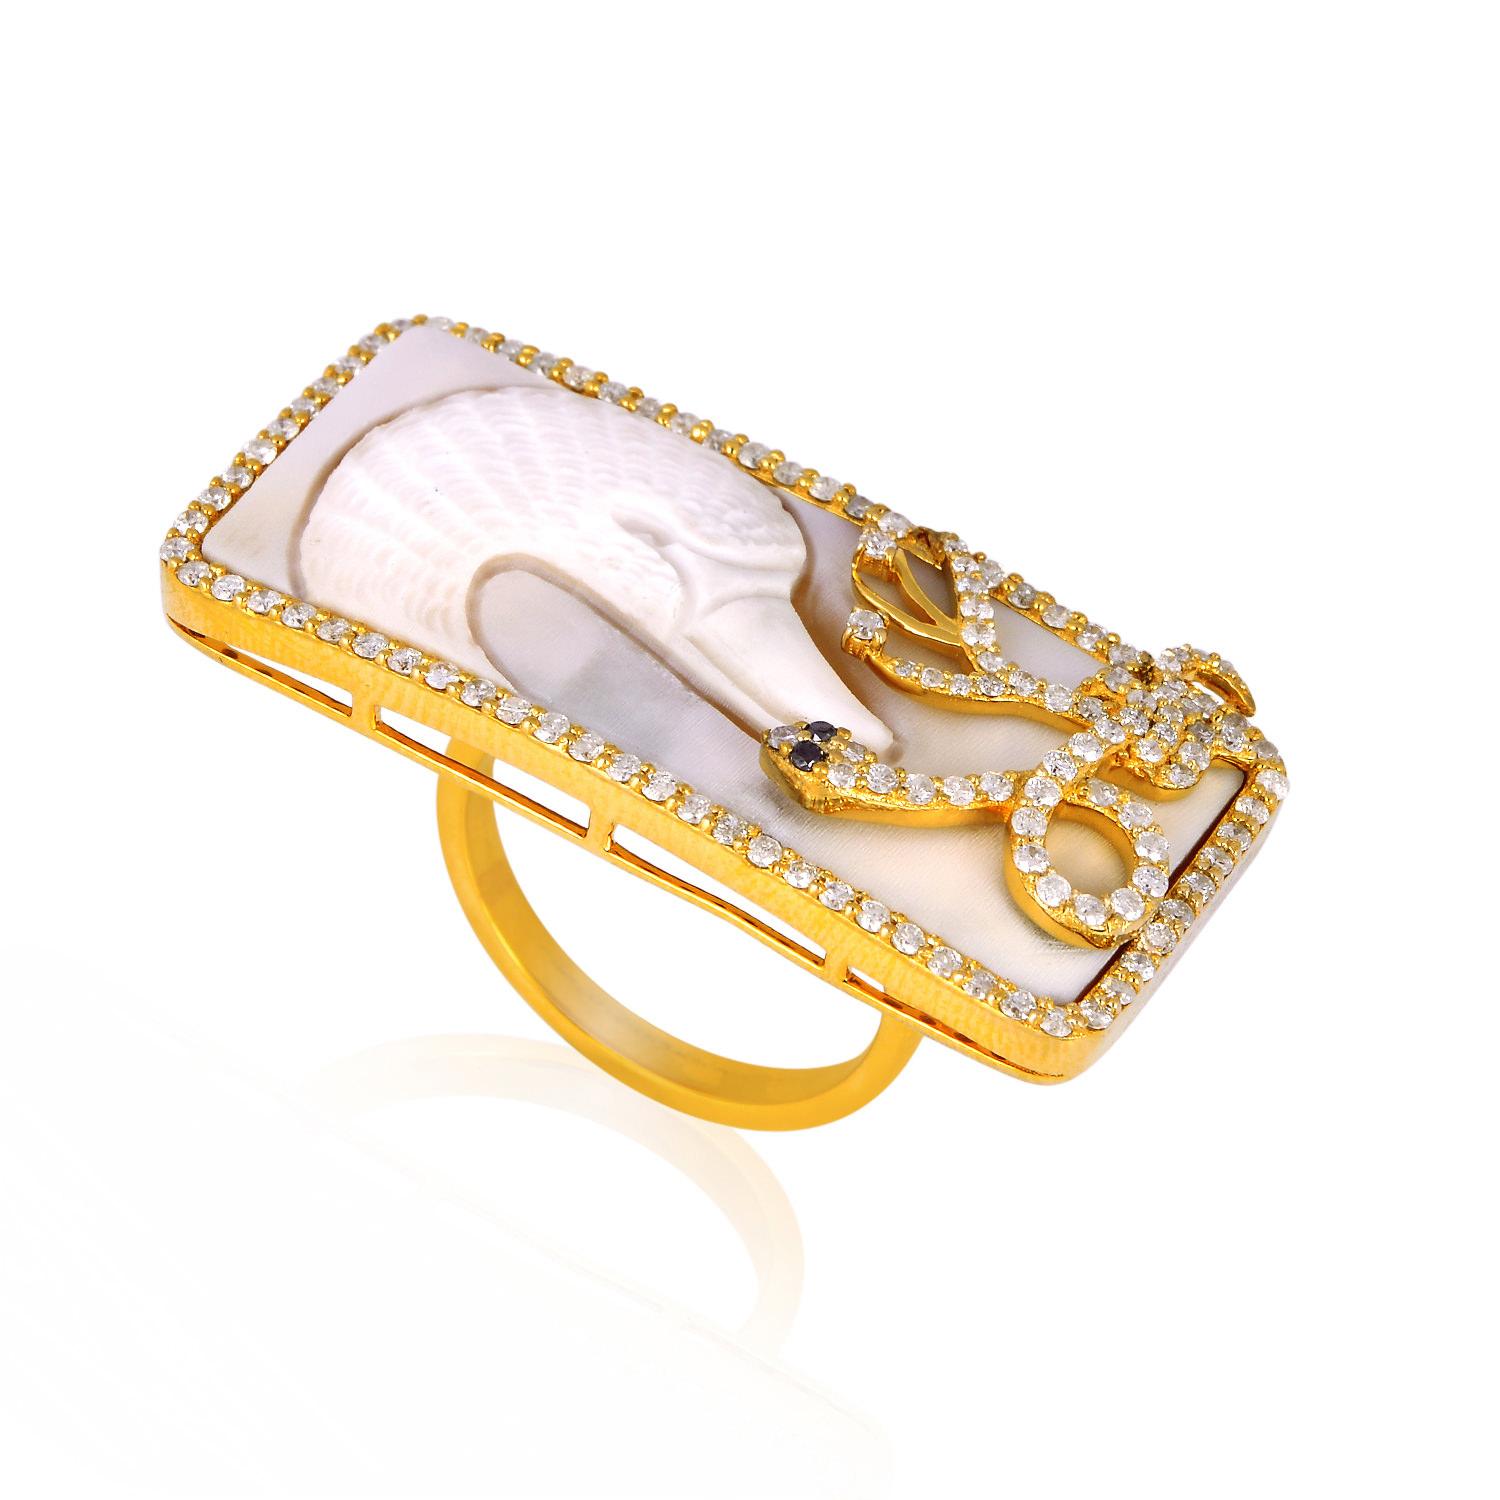 Designer Swan Shell Cameo Ring mit Diamanten 18k Gold, der Ihre 2 Finger bedeckt, ist eines unserer Lieblingsstücke. Diese Muschelkamee wurde von einem italienischen Kunsthandwerker handgeschnitzt.

Ringgröße: 7 (kann angepasst werden)

18Kt Gold: